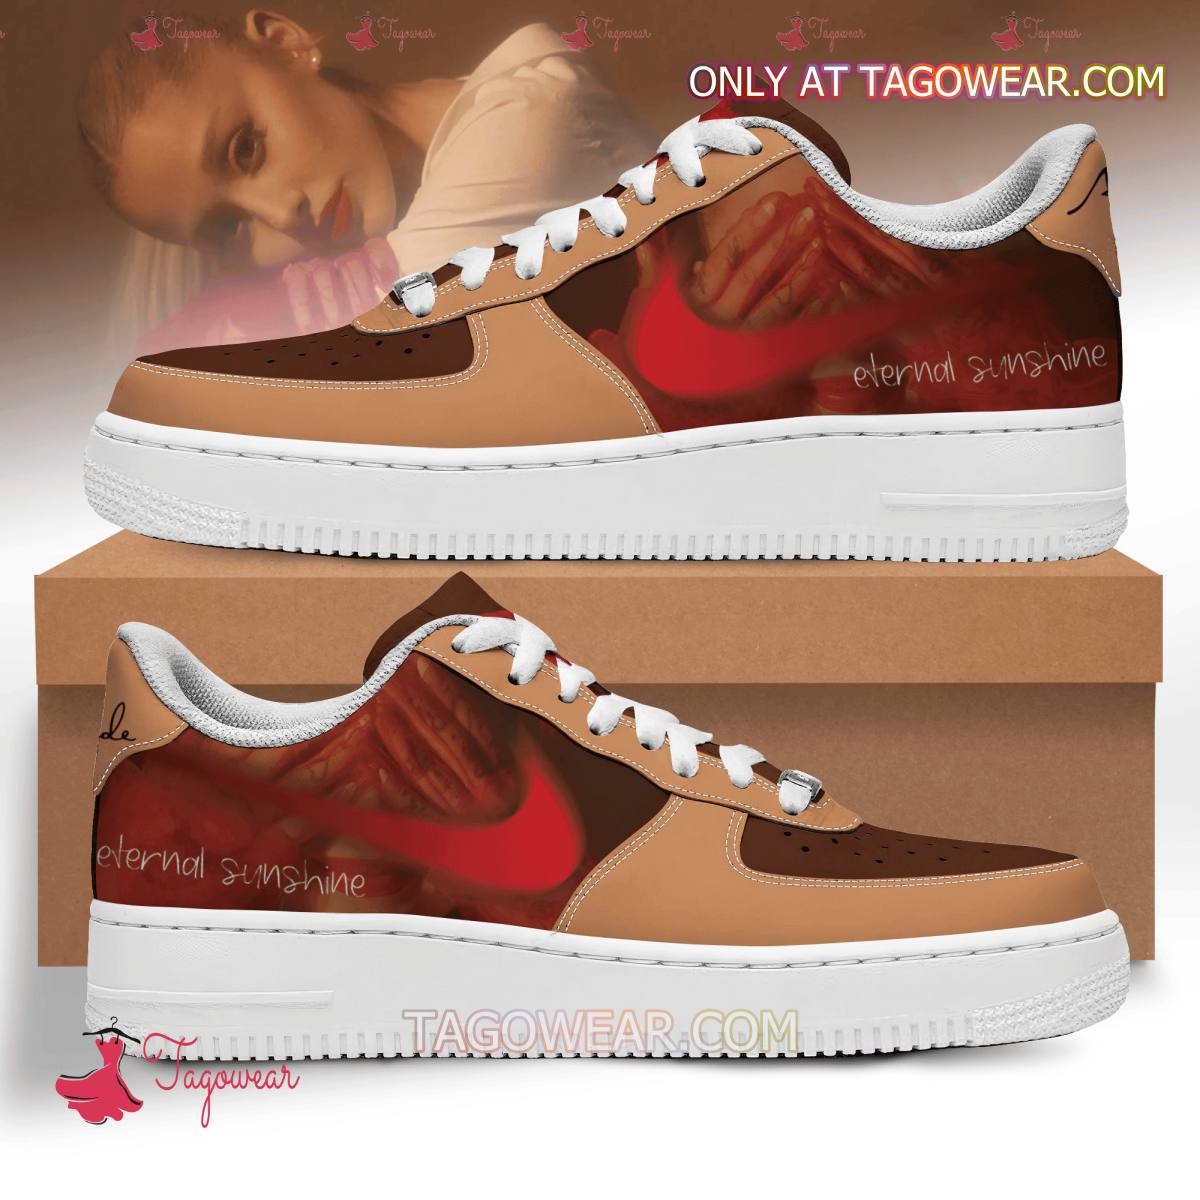 Ariana Grande Eternal Sunshine Air Force Shoes